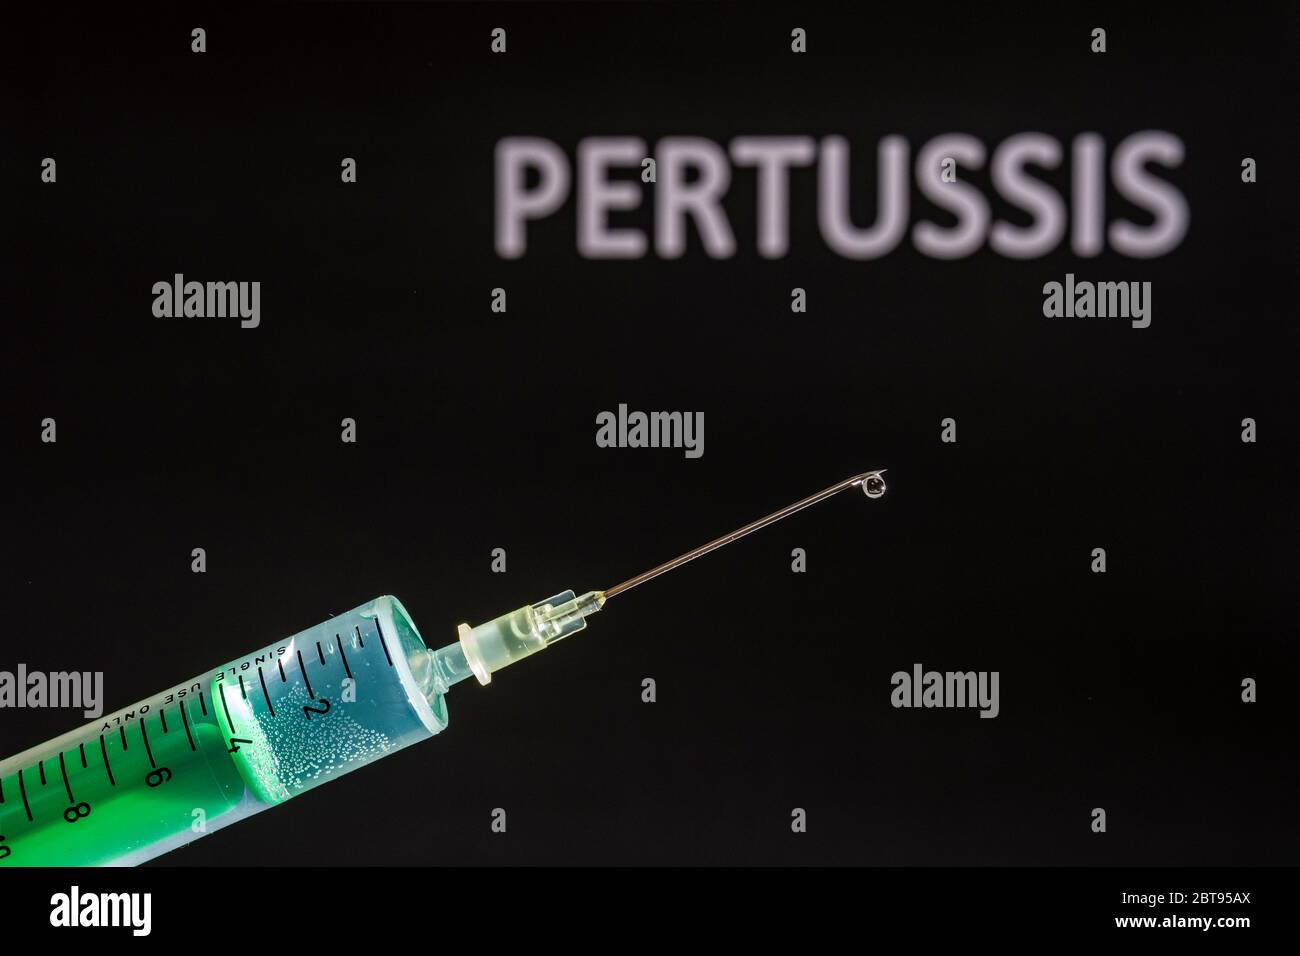 Diese Abbildung zeigt eine Einweg-Spritze mit hypodermischer Nadel, PERTUSSIS auf einer schwarzen Tafel dahinter geschrieben Stockfoto